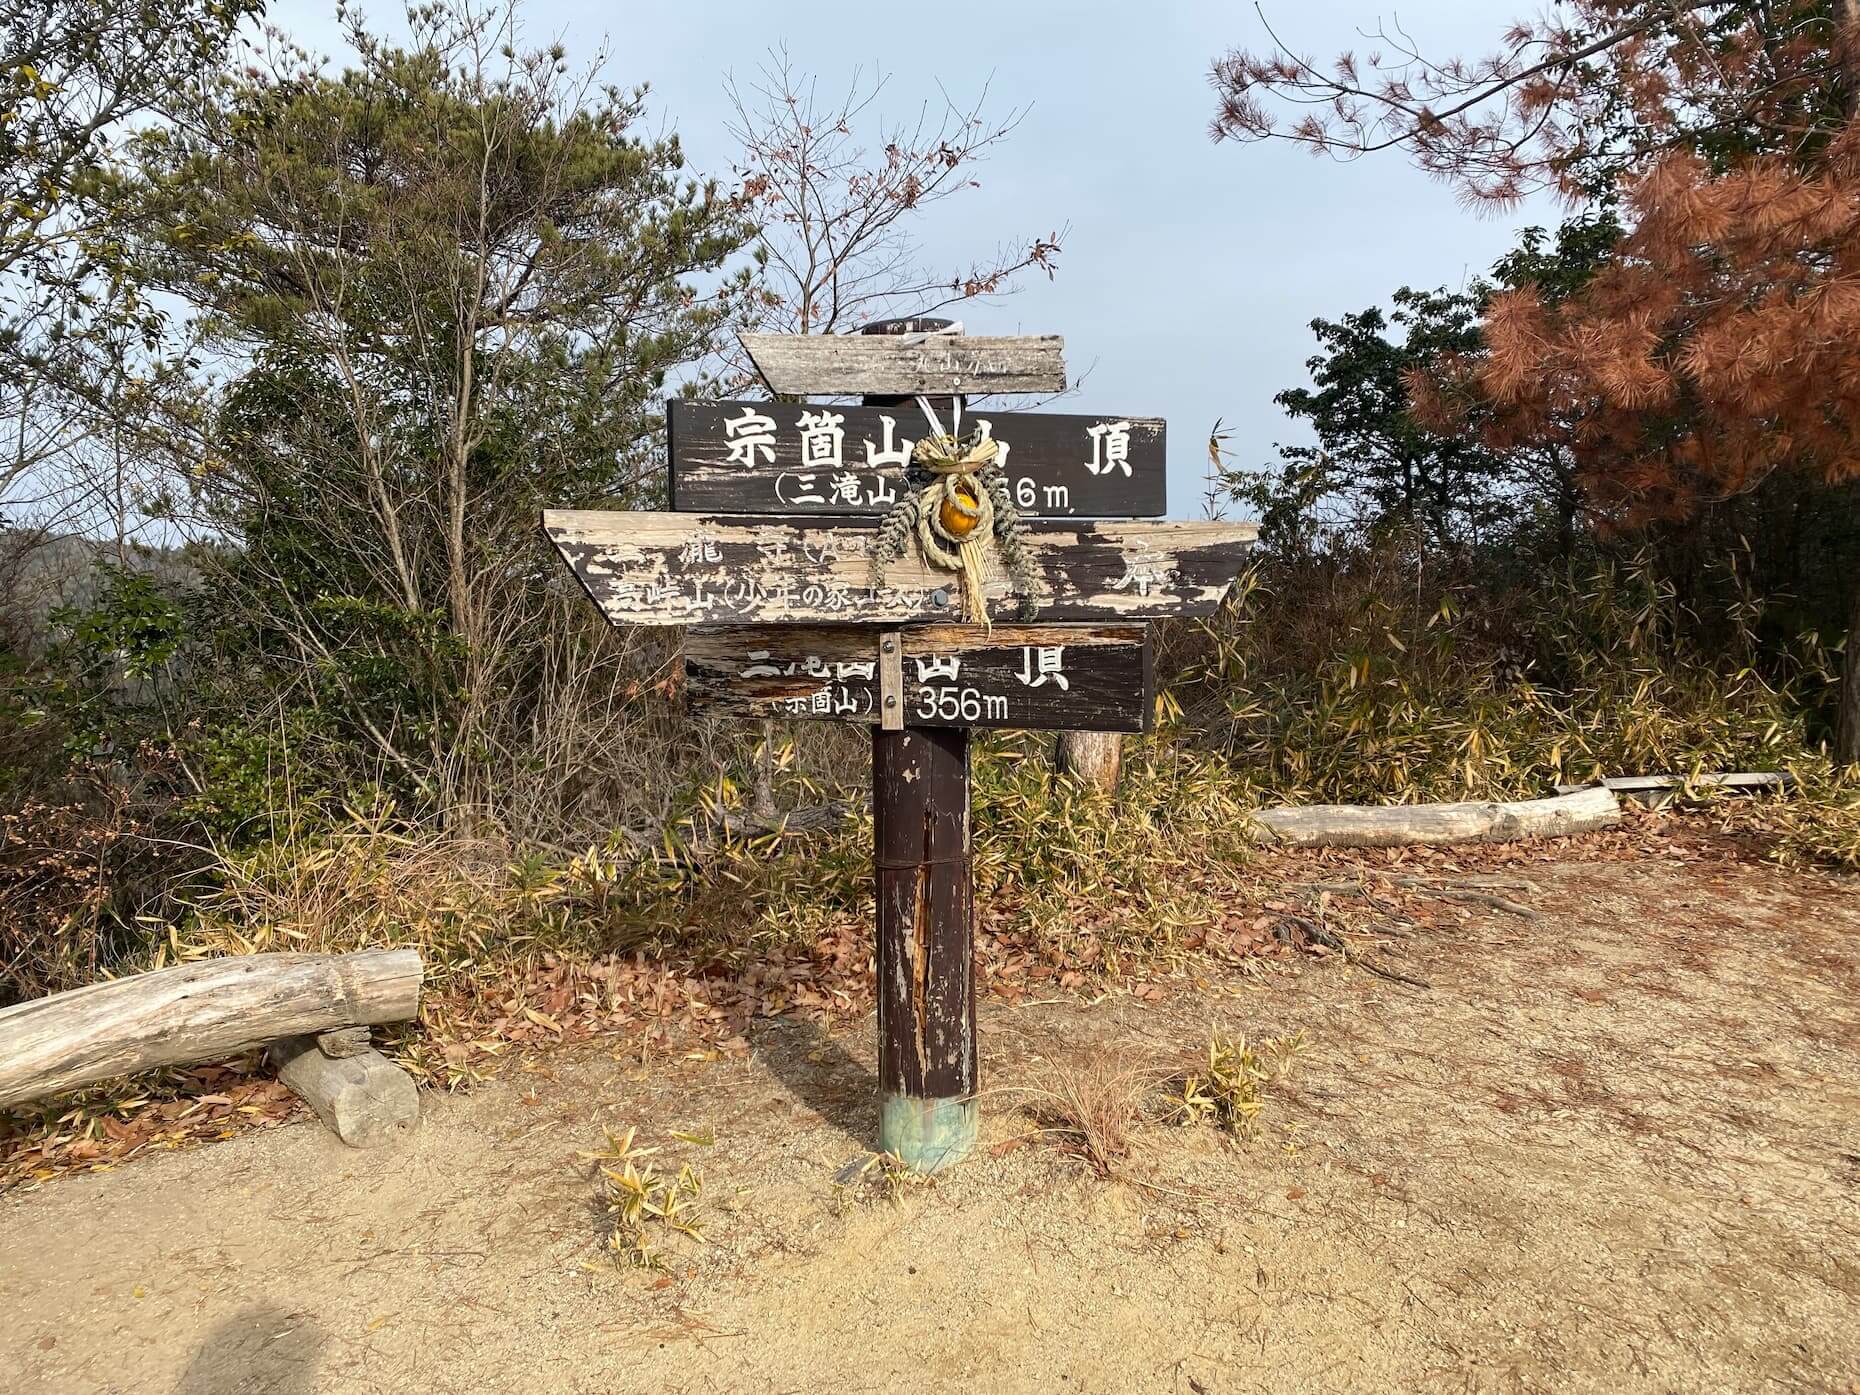 宗箇山山頂。標識に正月飾りがかけられていた